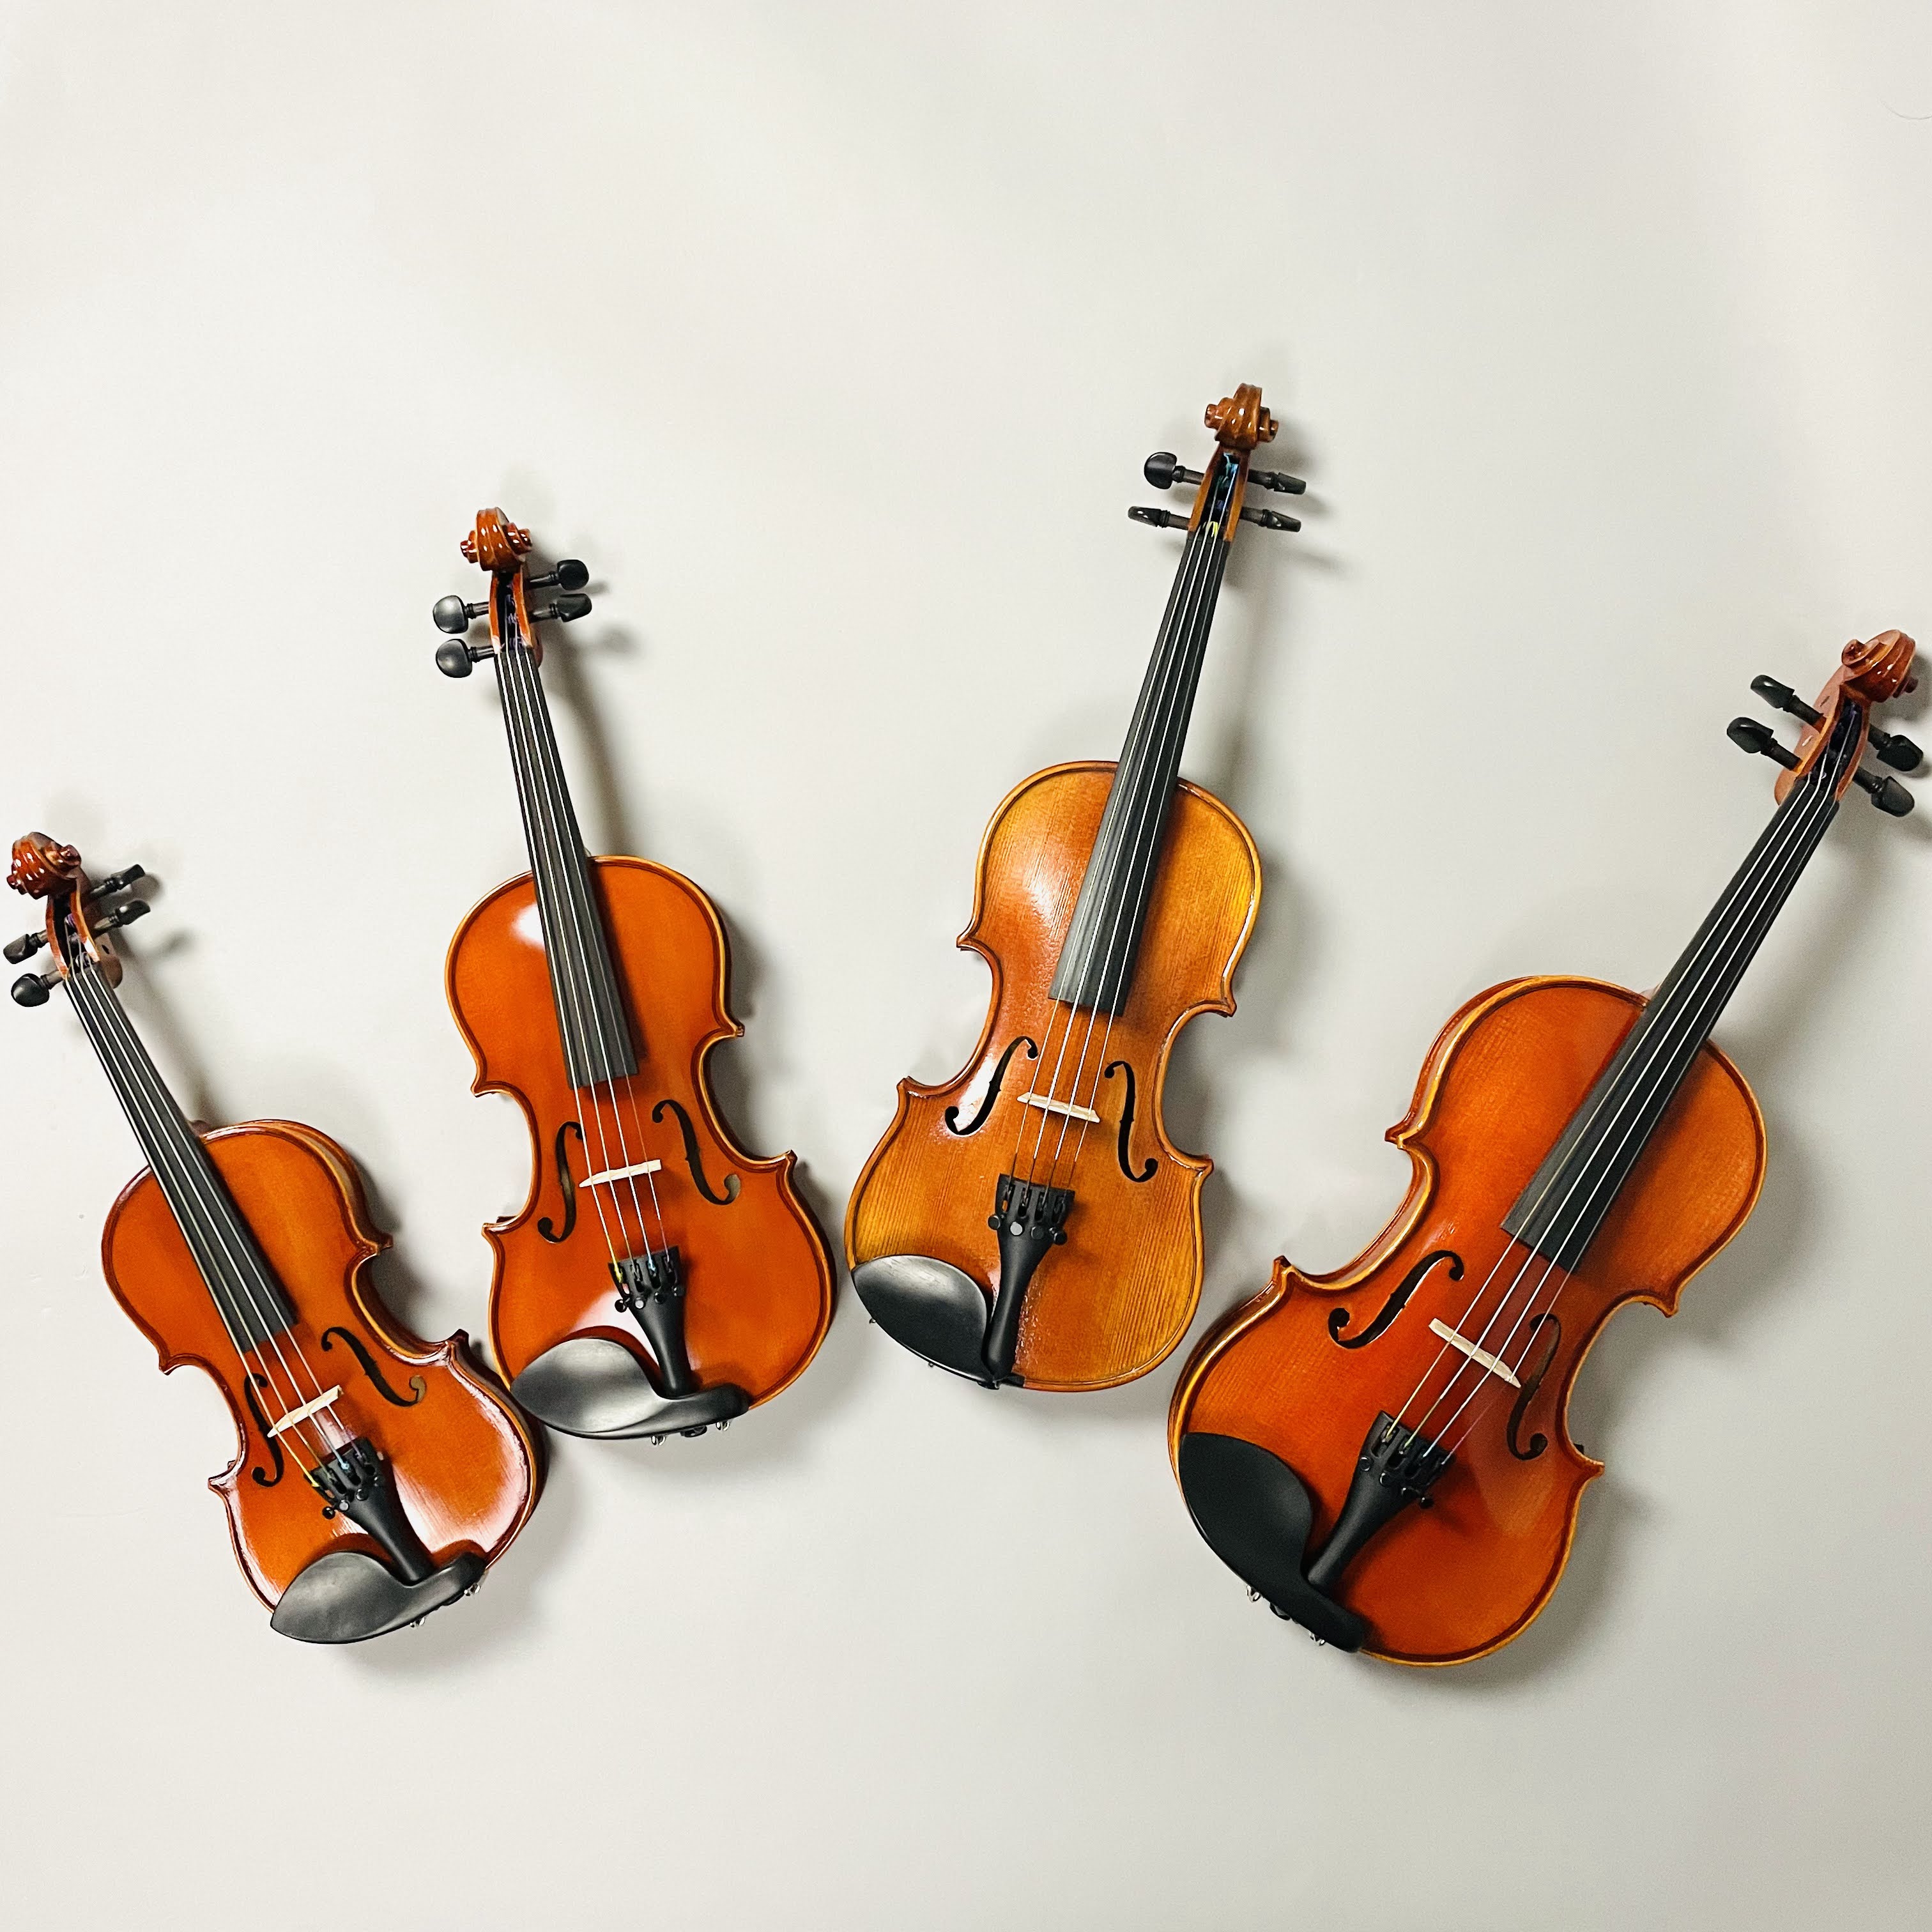 CONTENTS展示分数ヴァイオリン紹介弦楽器技術者紹介弦楽器アドバイザー紹介お問合せ展示分数ヴァイオリン紹介 お子様の身長、手の長さに合ったサイズをお選びください。適したサイズをご案内させて頂きますので、分数ヴァイオリンをご検討の場合はぜひお子様もご一緒にお店にお越しください。 弦楽器技術者紹介  […]